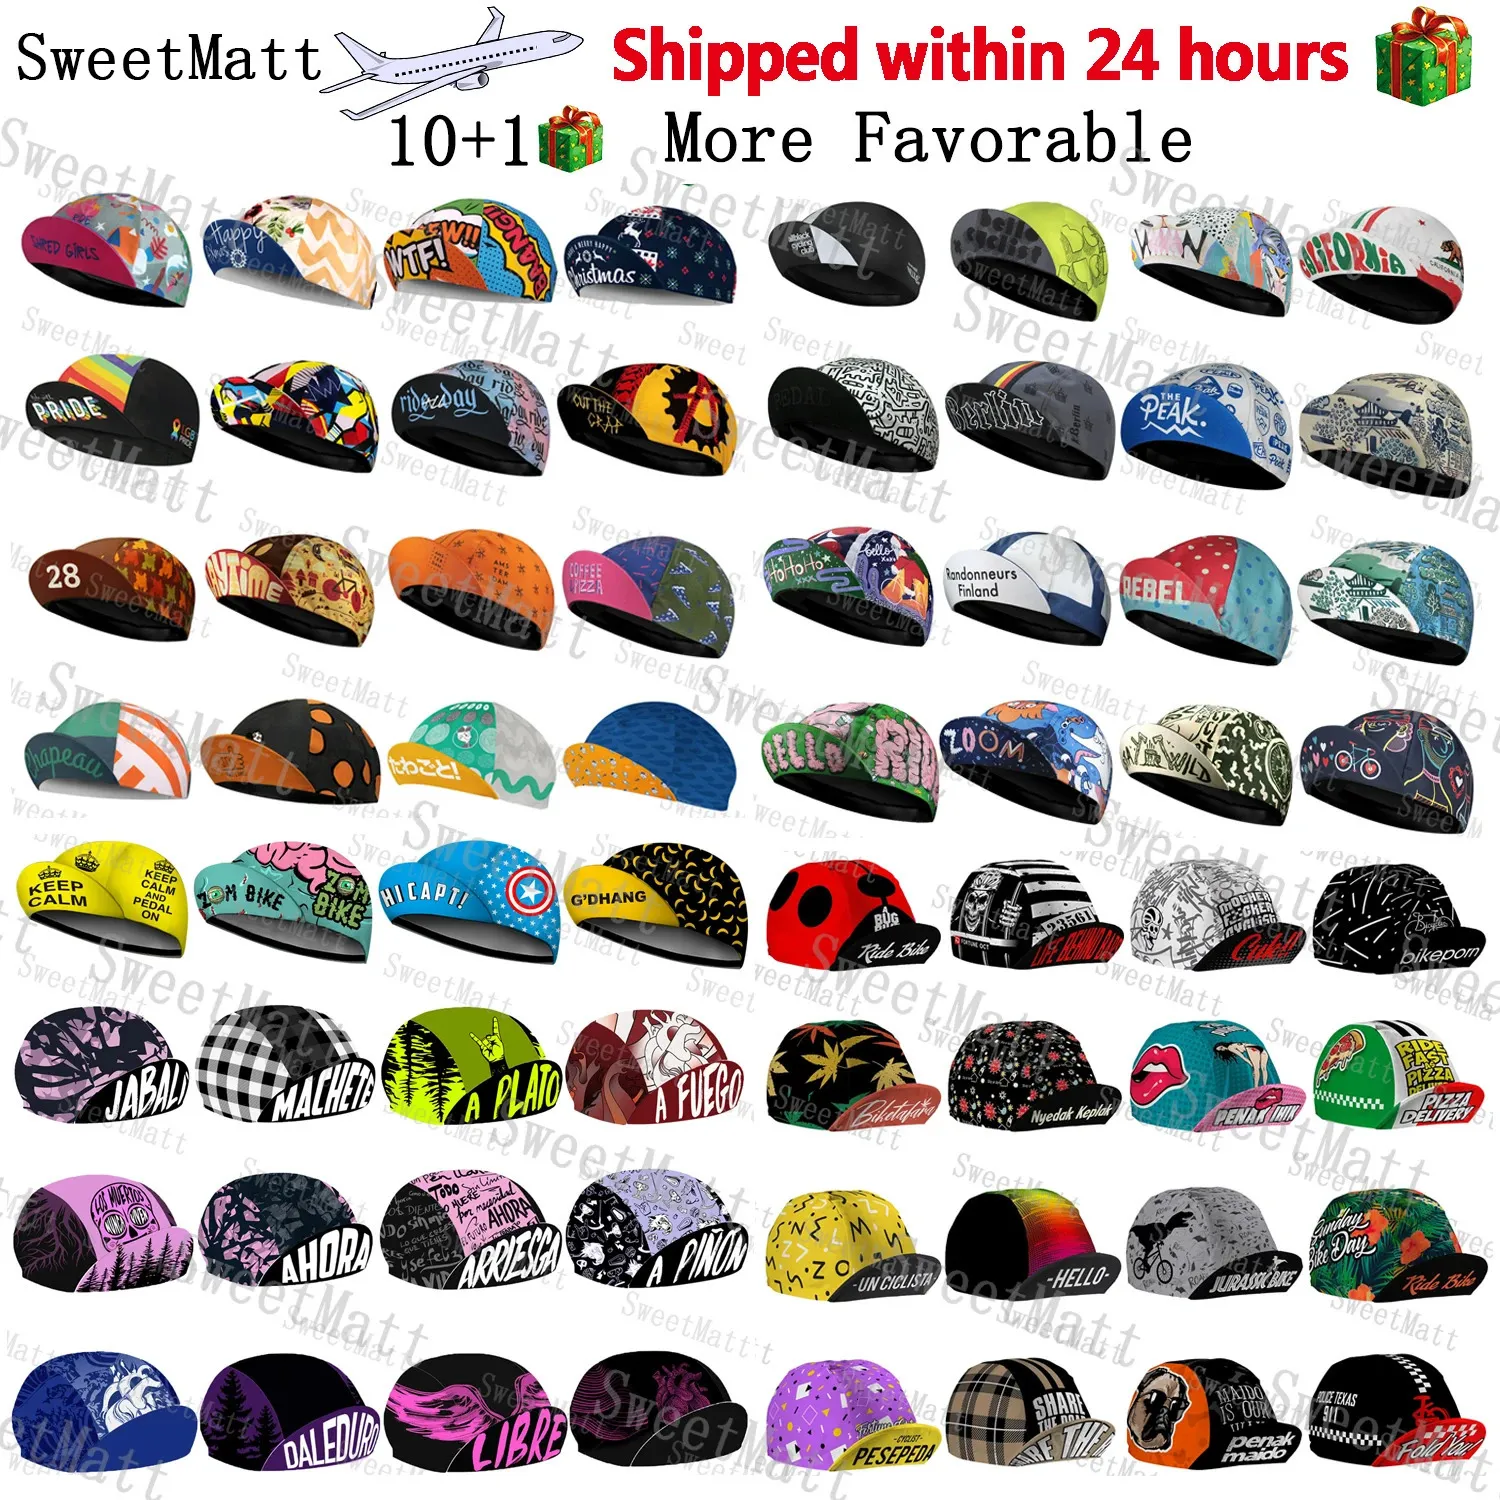 Sweetmatt Classic Retro Полиэстеровые велосипедные шапки. Набор из 10 быстросохнущих дышащих велосипедных шапок. Летняя велосипедная спортивная Балаклава унисекс 231229